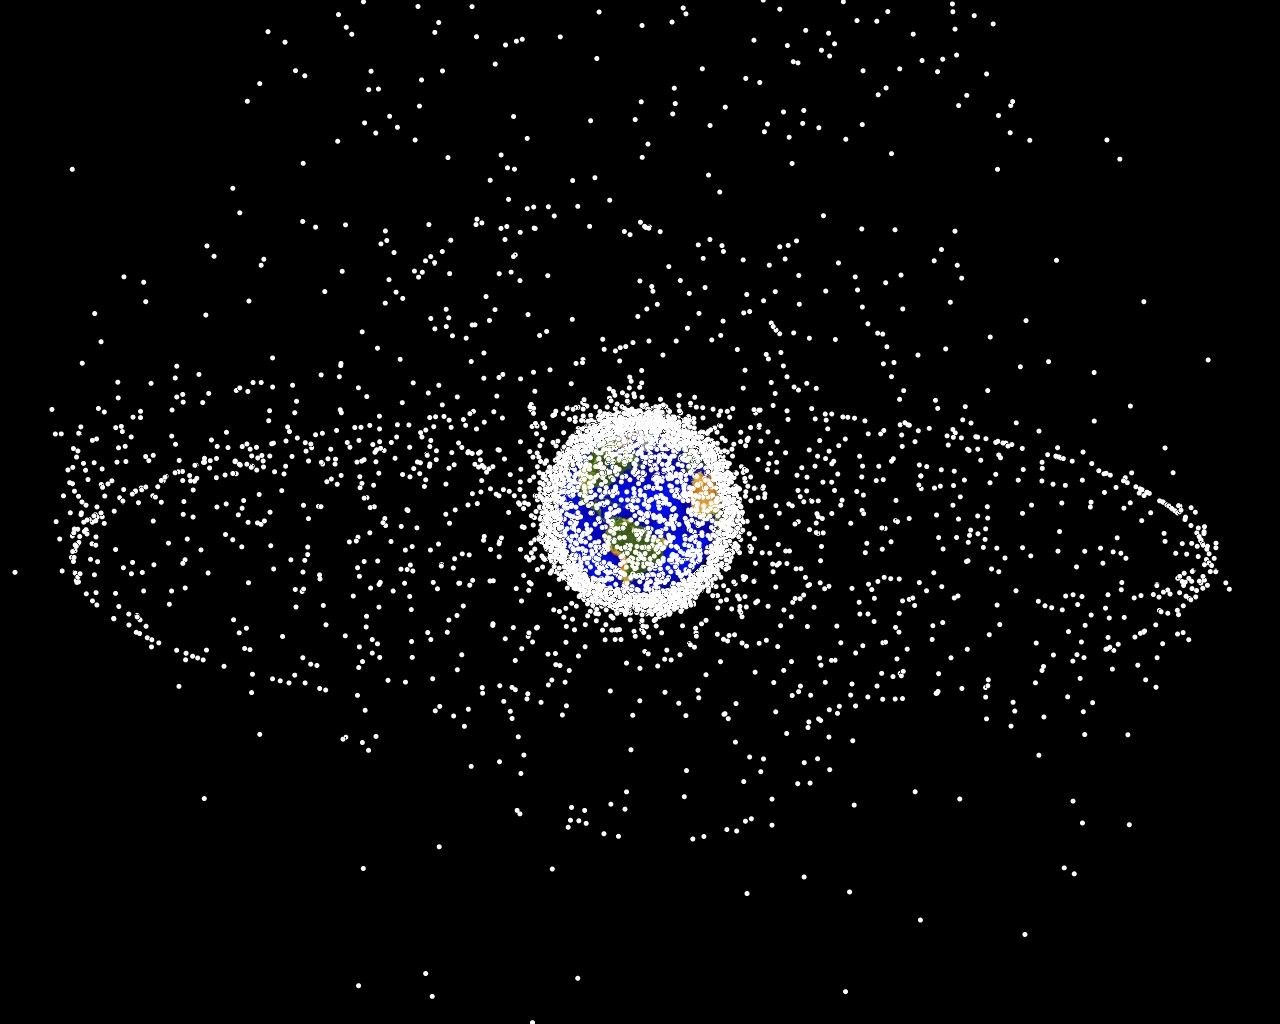 從地球同步軌道（GEO）外看到的太空碎片群